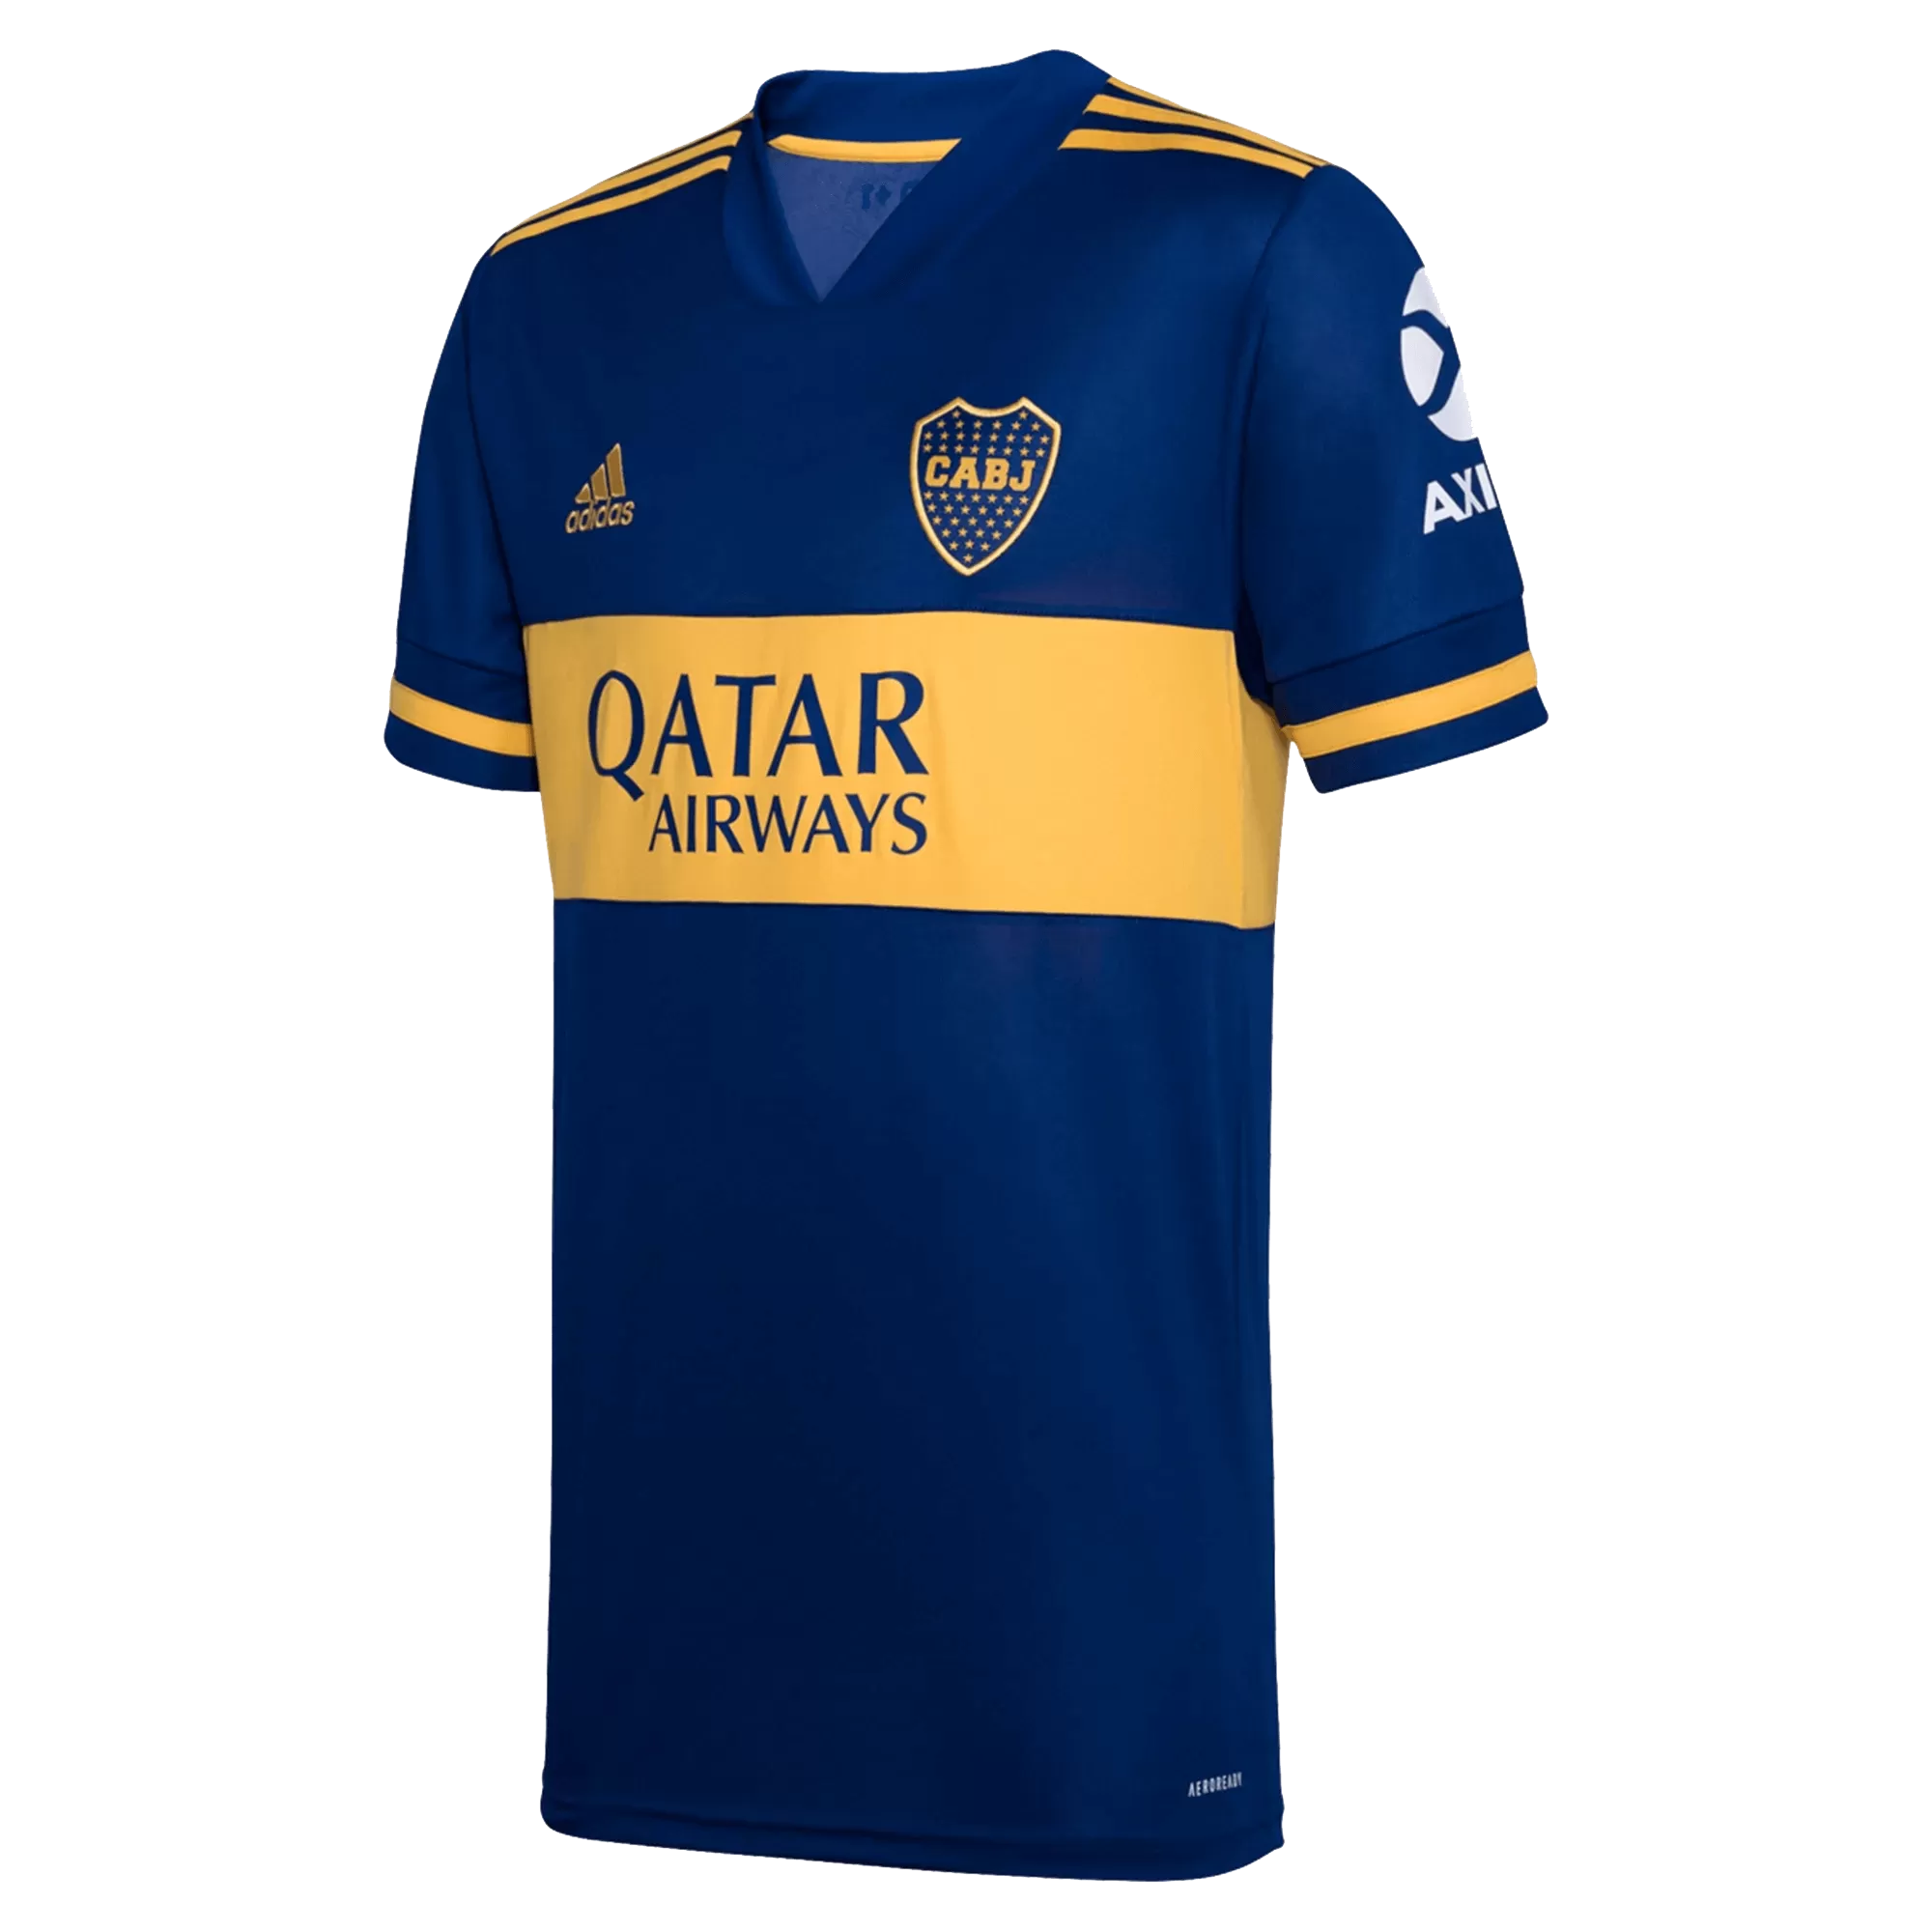 Cariñoso pánico Experto Replica Adidas Boca Juniors Home Soccer Jersey 2020/21